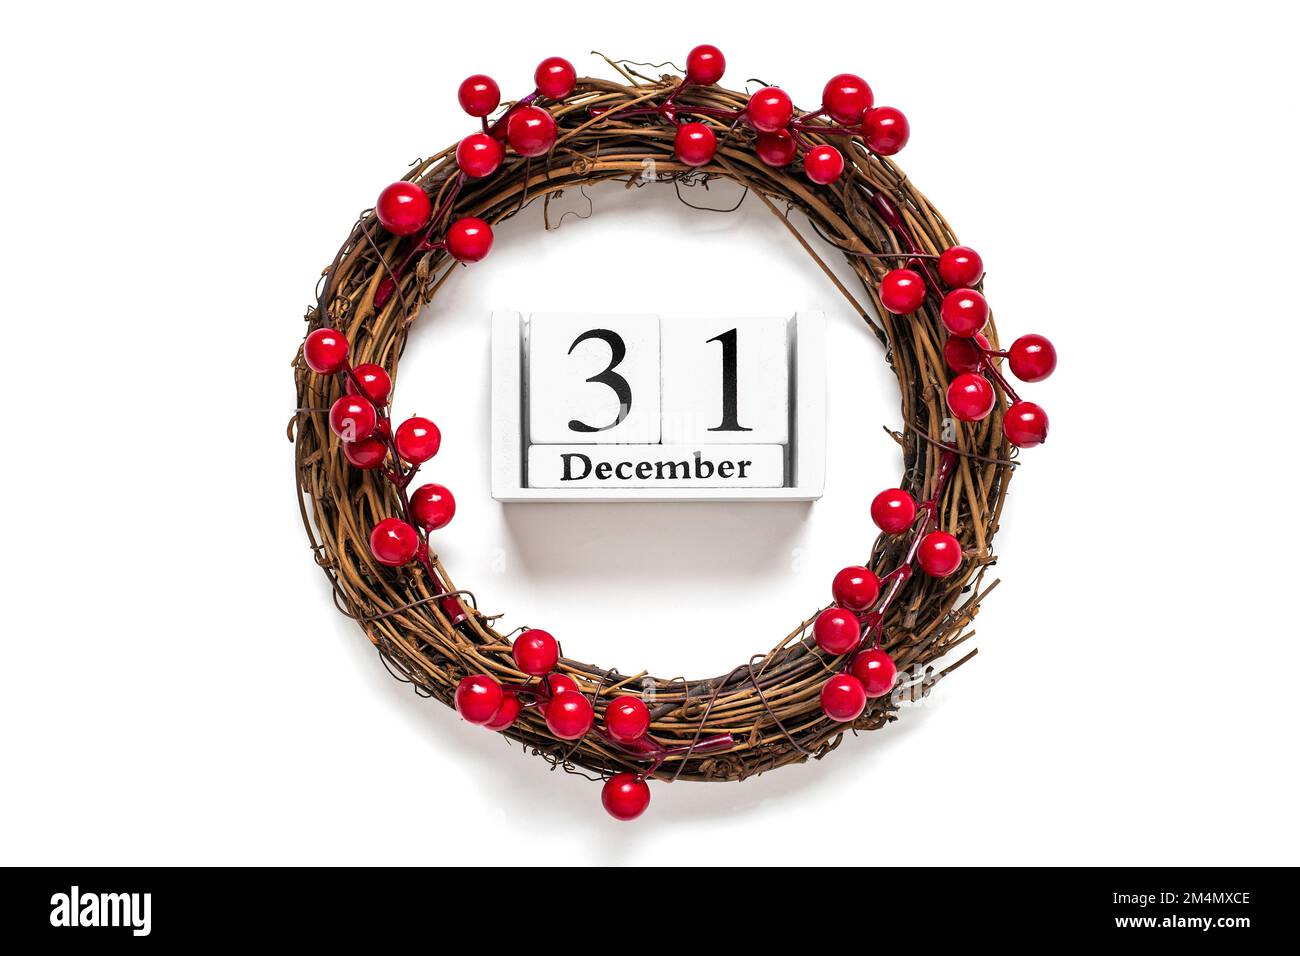 Weihnachtskranz dekoriert mit roten Beeren, Holzkalender Datum 31. Dezember isoliert auf weißem Hintergrund Konzept der Weihnachtsvorbereitung, Atmosphäre wünscht Karte handgemachter Weihnachtskranz flach legen. Stockfoto